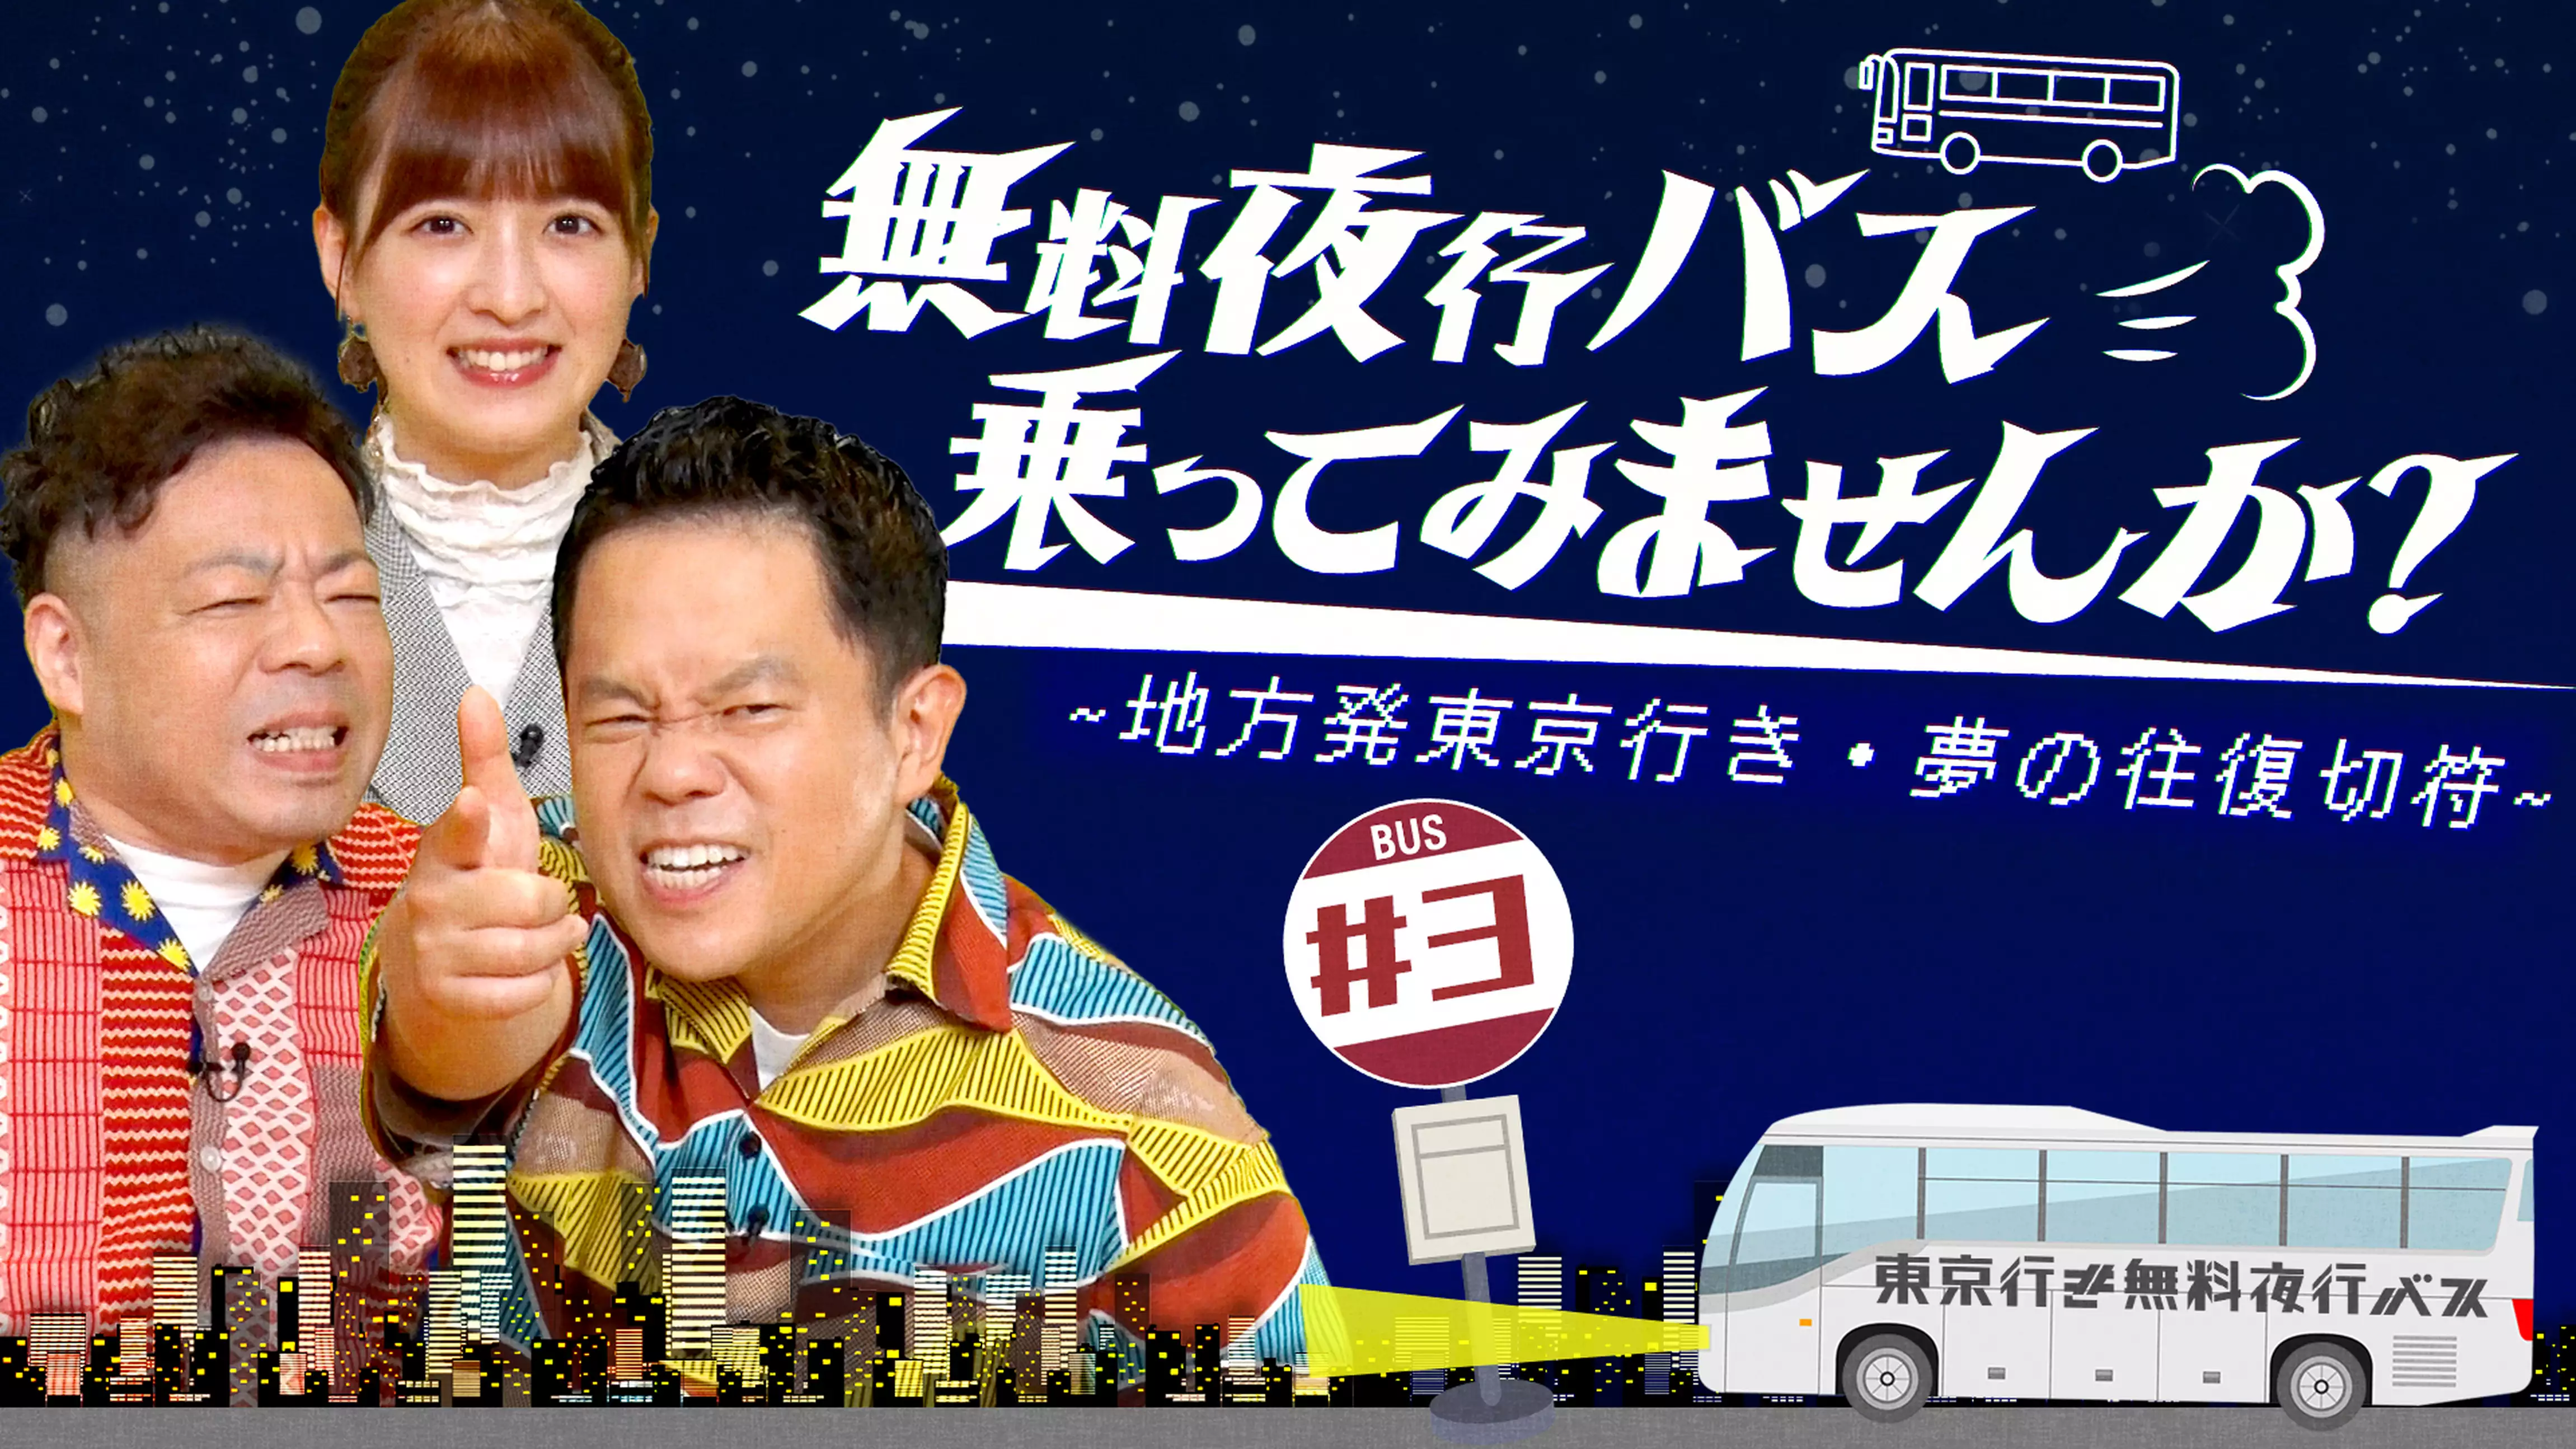 新潟から夜行バスで東京へやってきた5人の夢